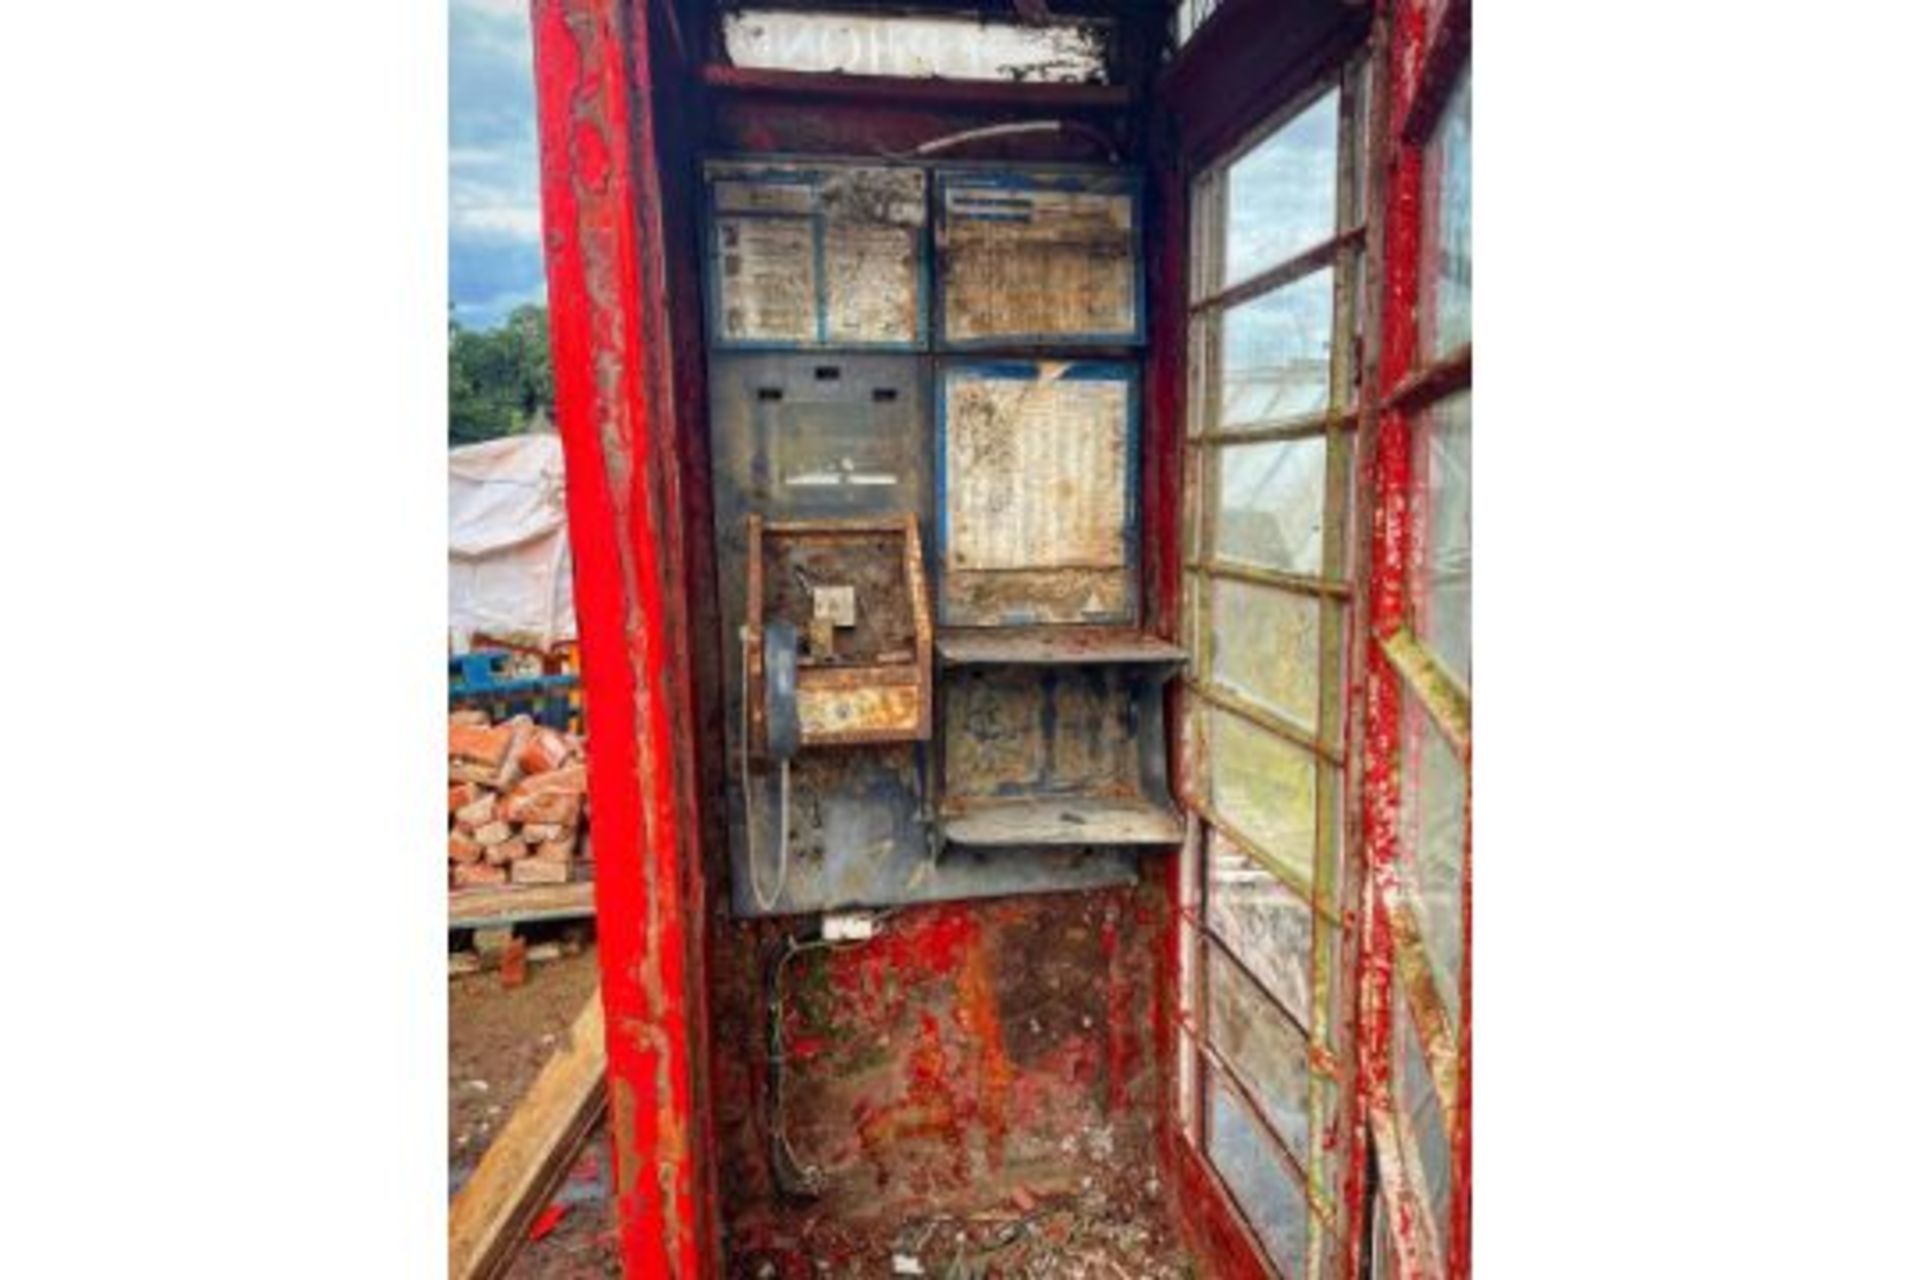 K6 telephone box - Image 3 of 4